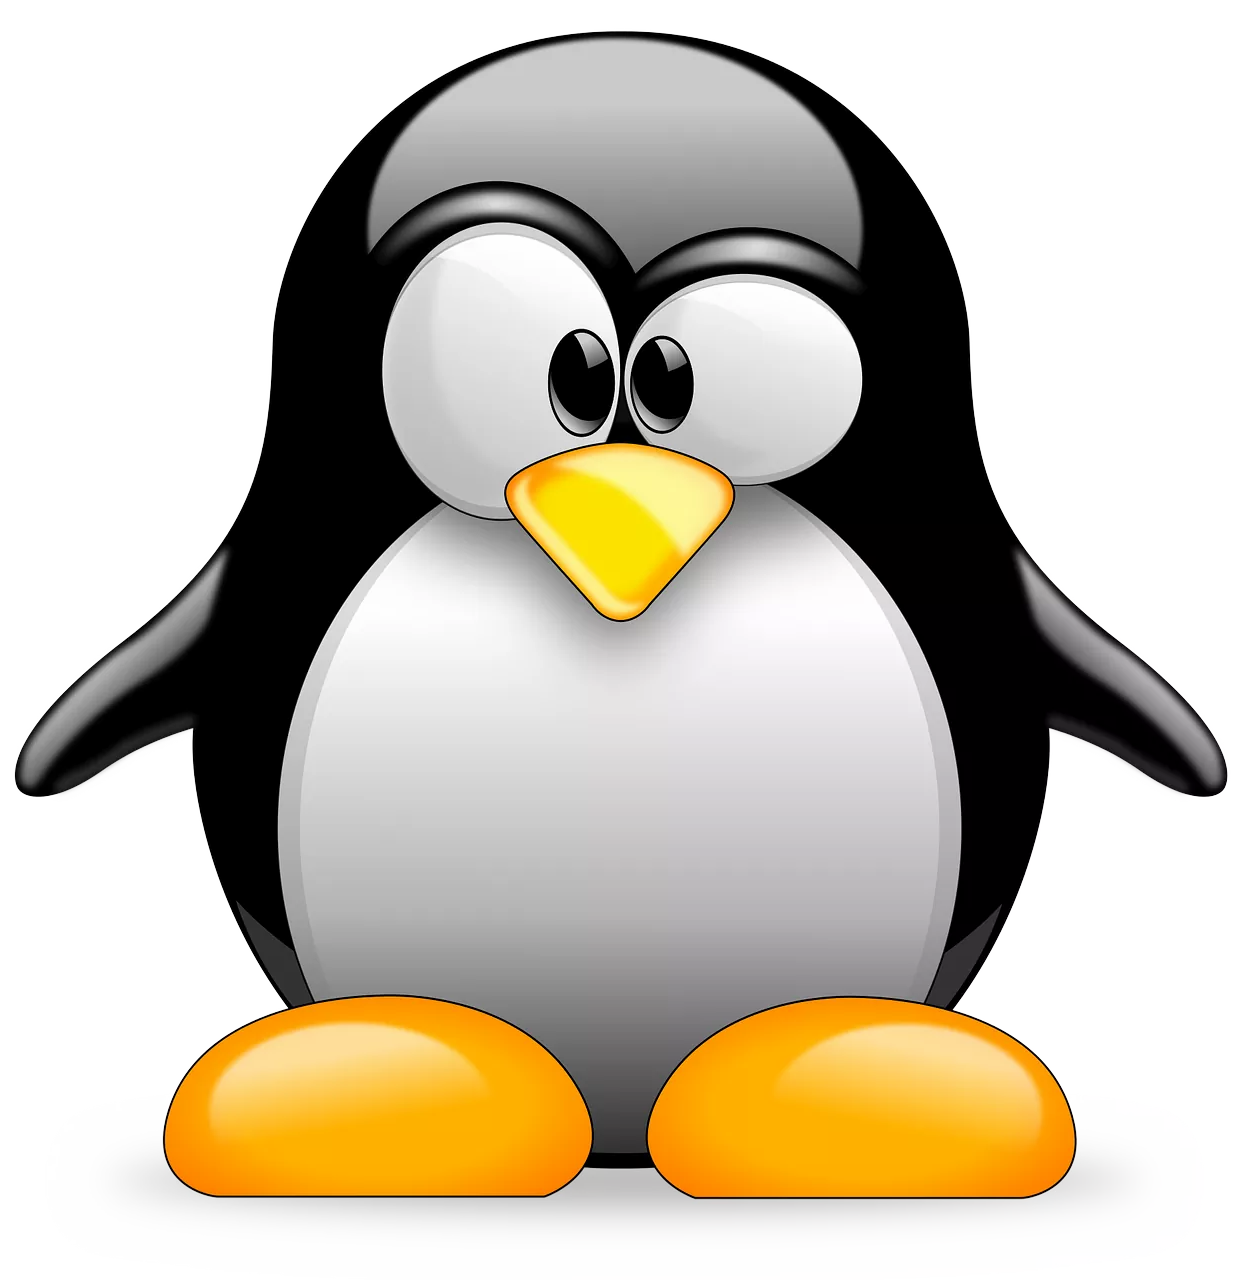 Guía Completa de Inicio en el Mundo de Linux, el Tux